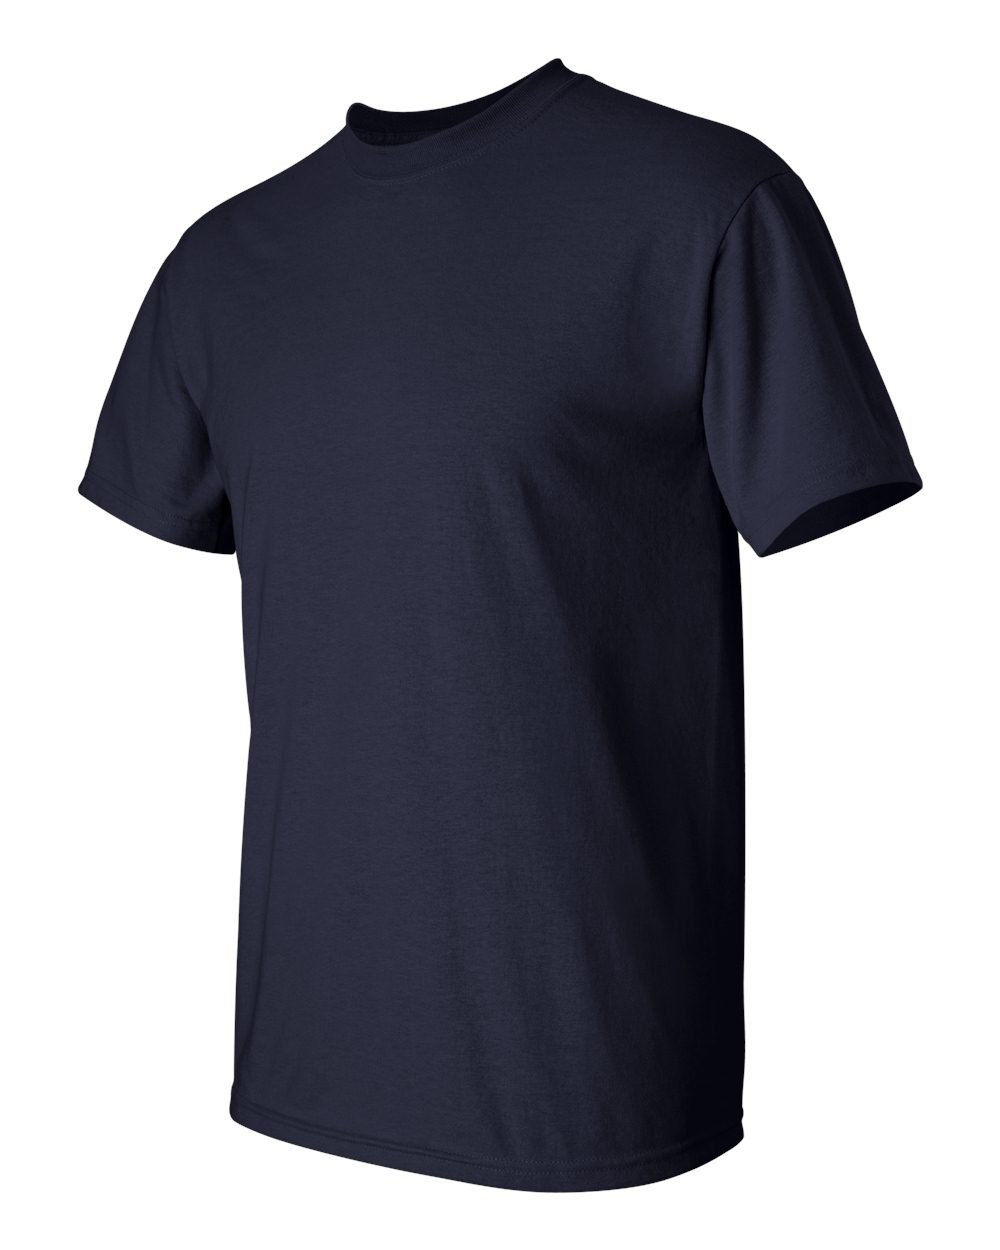 Ultra Cotton Tall 6 oz. Short-Sleeve T-Shirt (G200T) Navy, 3XLT (Pack of 12)